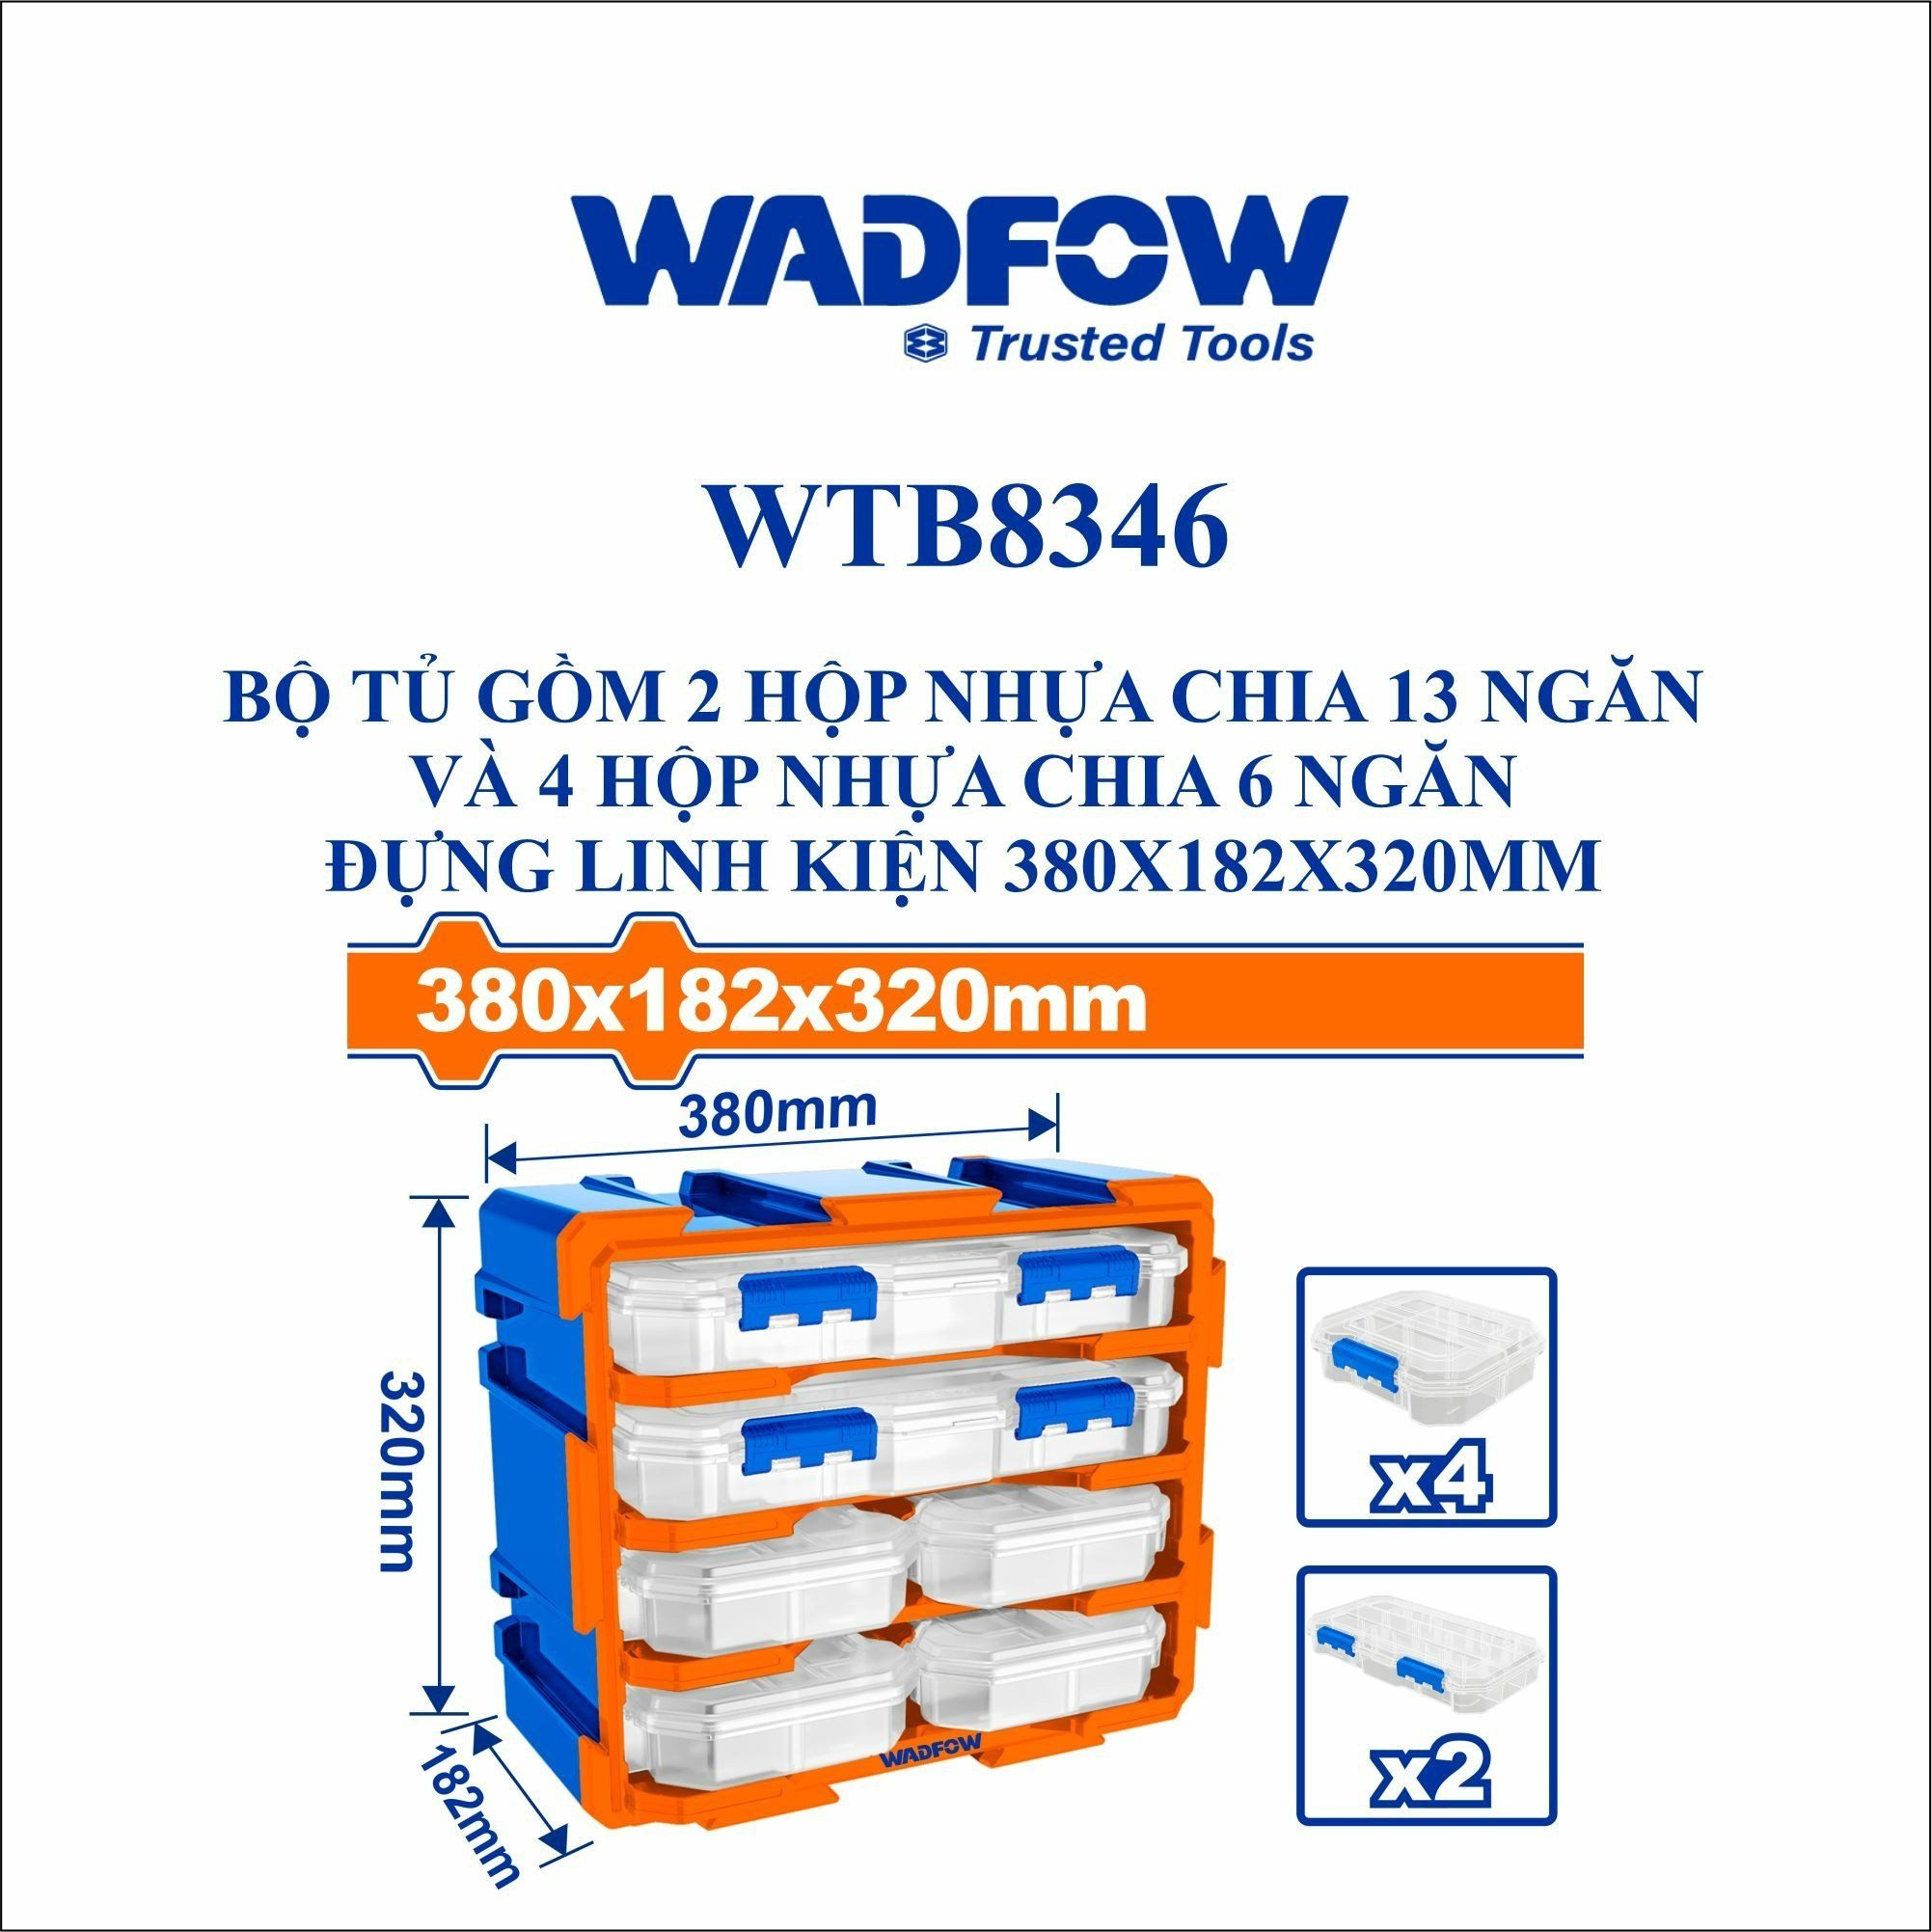  Bộ tủ gồm 2 hộp nhựa chia 13 ngăn và 4 hộp nhựa chia 6 ngăn đựng linh kiện 380x182x320mm WADFOW WTB8346 